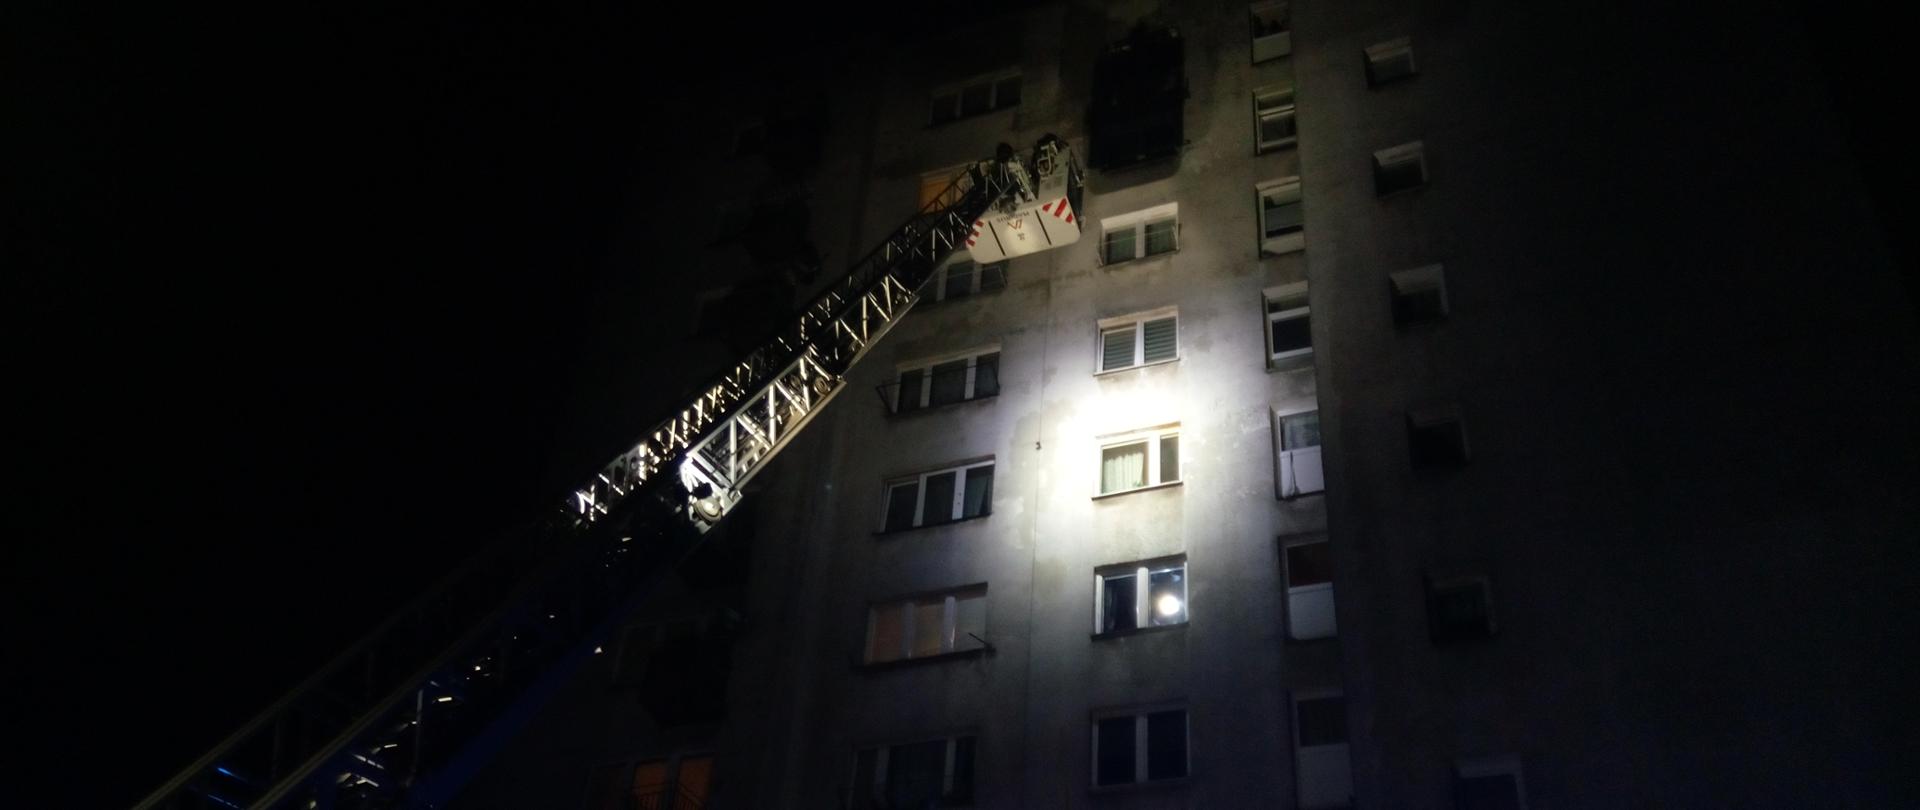 Zdjęcie przedstawia rozstawioną drabinę mechaniczną z koszem pod oknem na 9 piętrze wieżowca. Jest ciemno. Wieżowiec jest oświetlony. Nie widać ognia ani dymu.